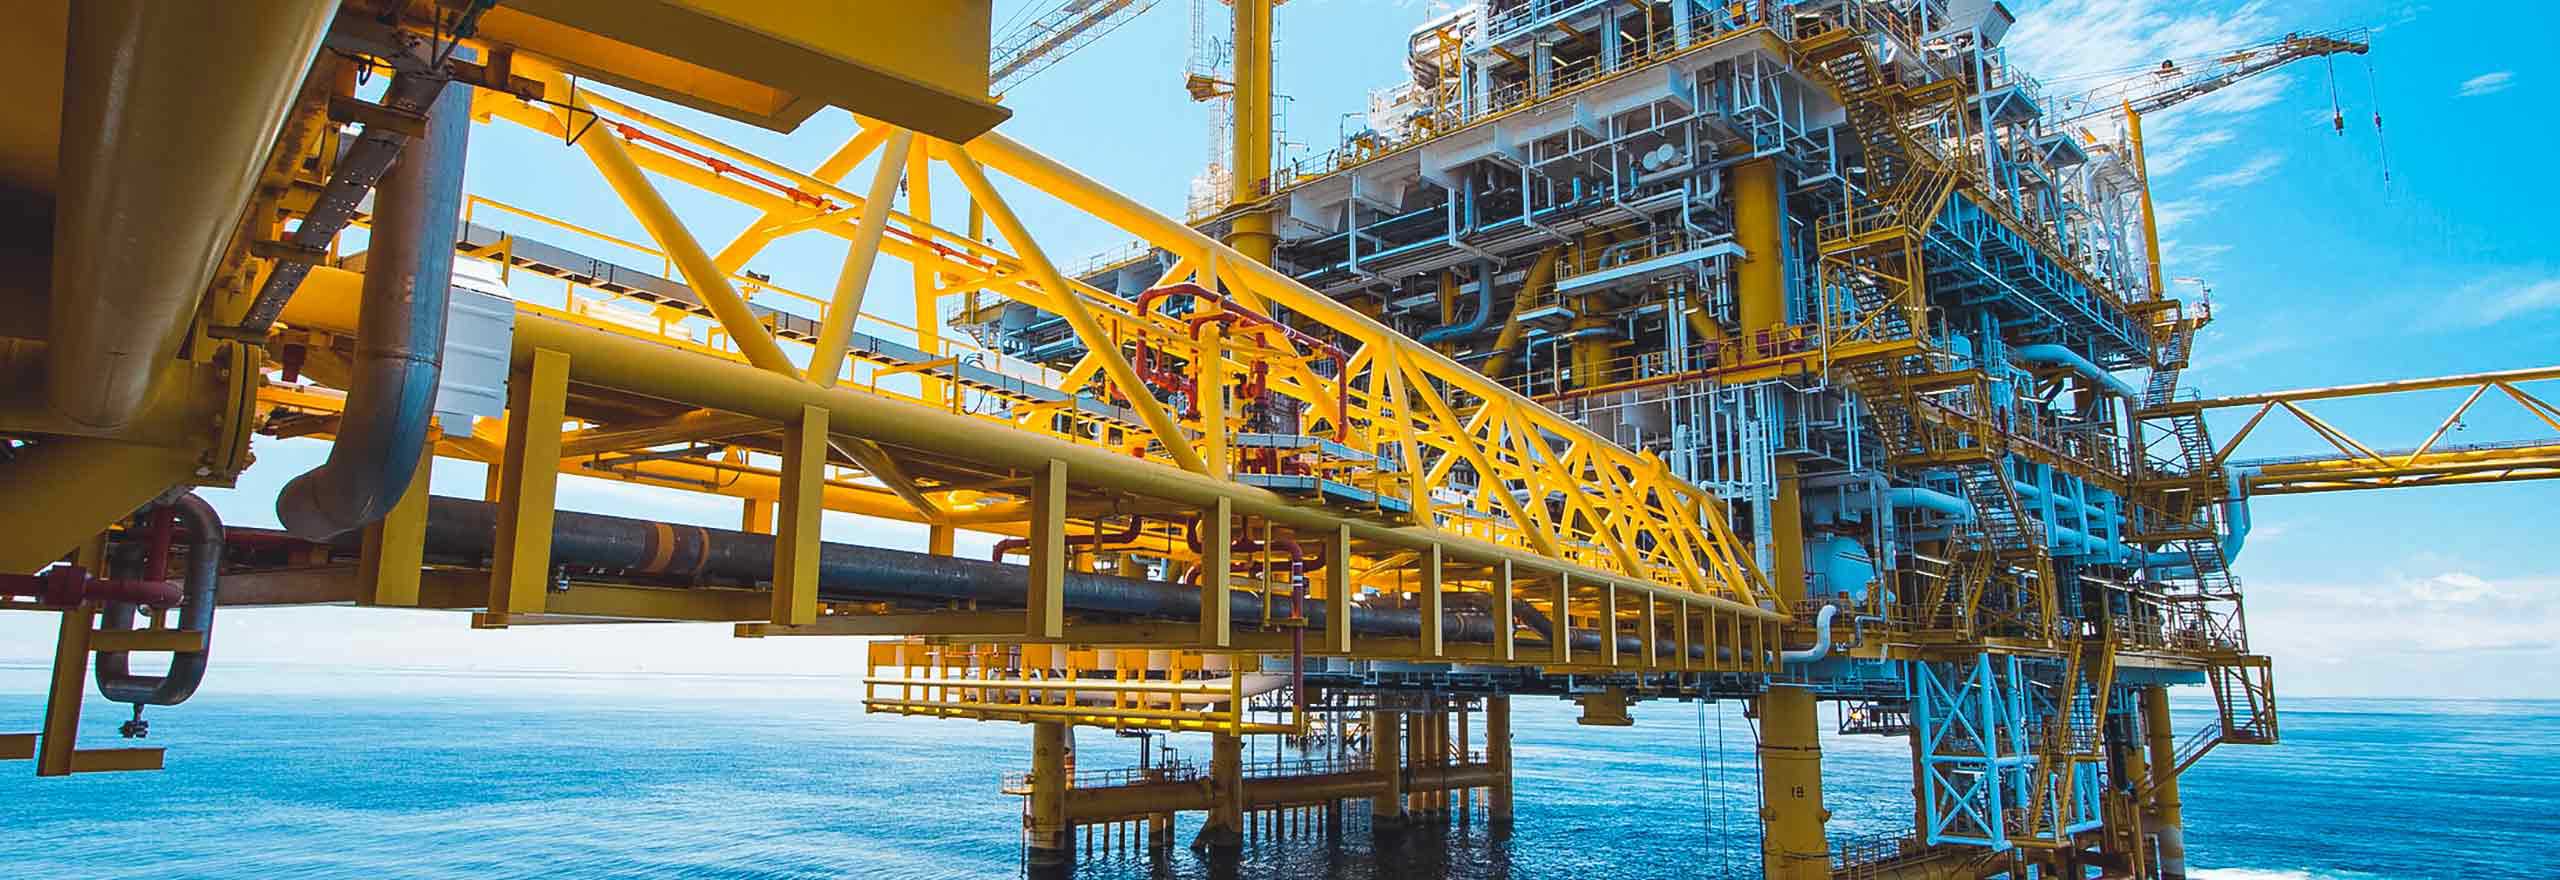 Plataforma en alta mar que utiliza las soluciones de petróleo y gas de Hexagon